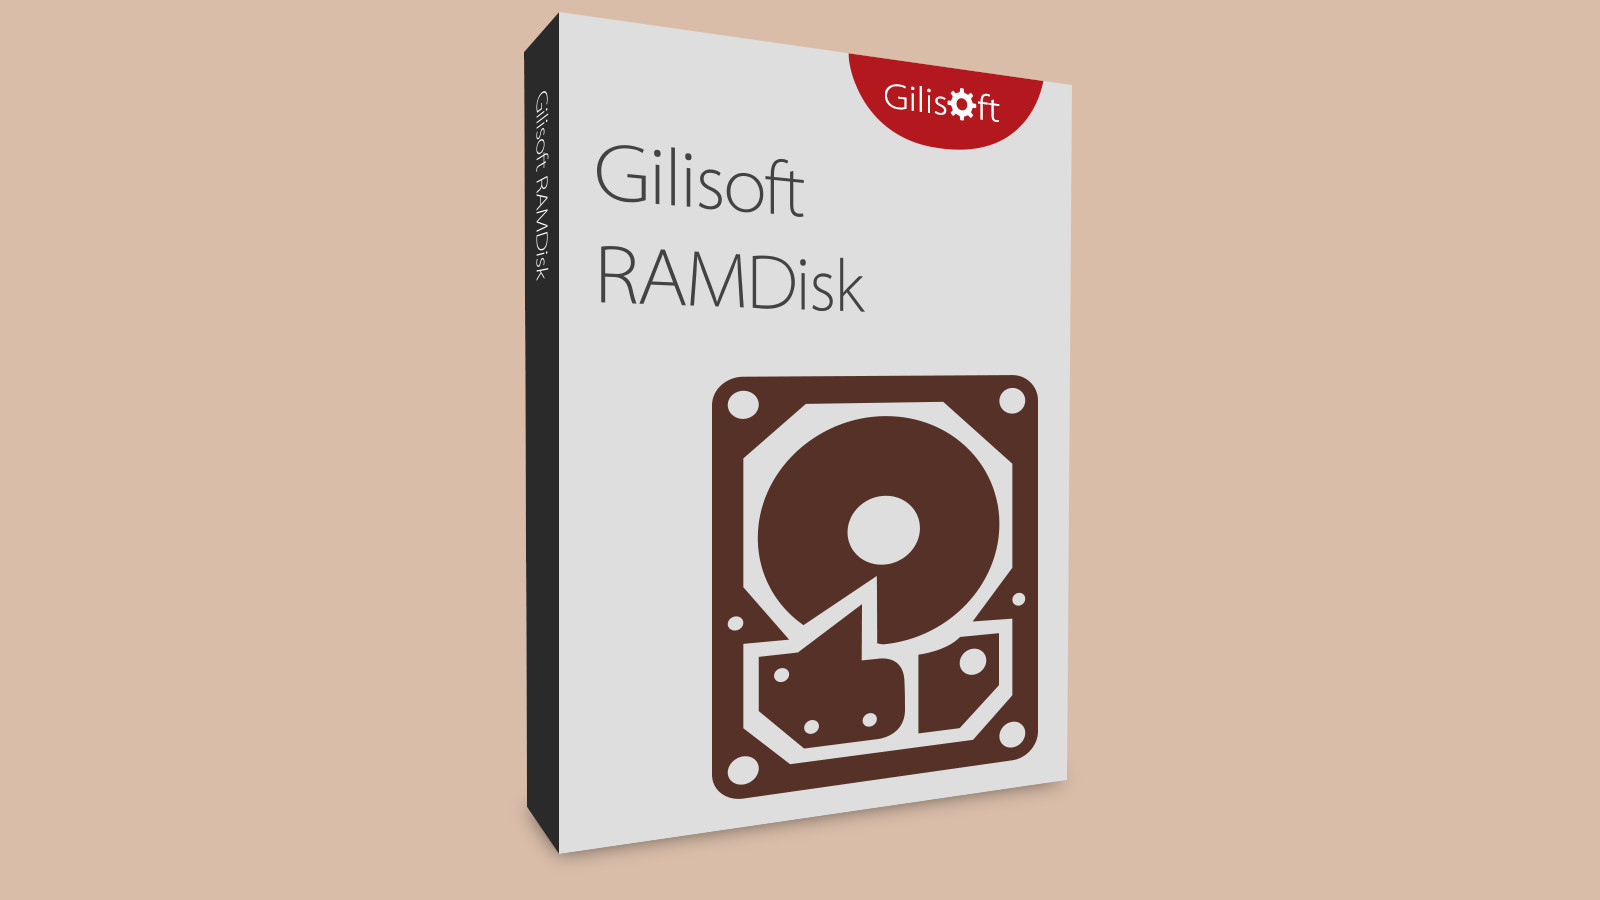 Gilisoft RAMDisk CD Key $15.54